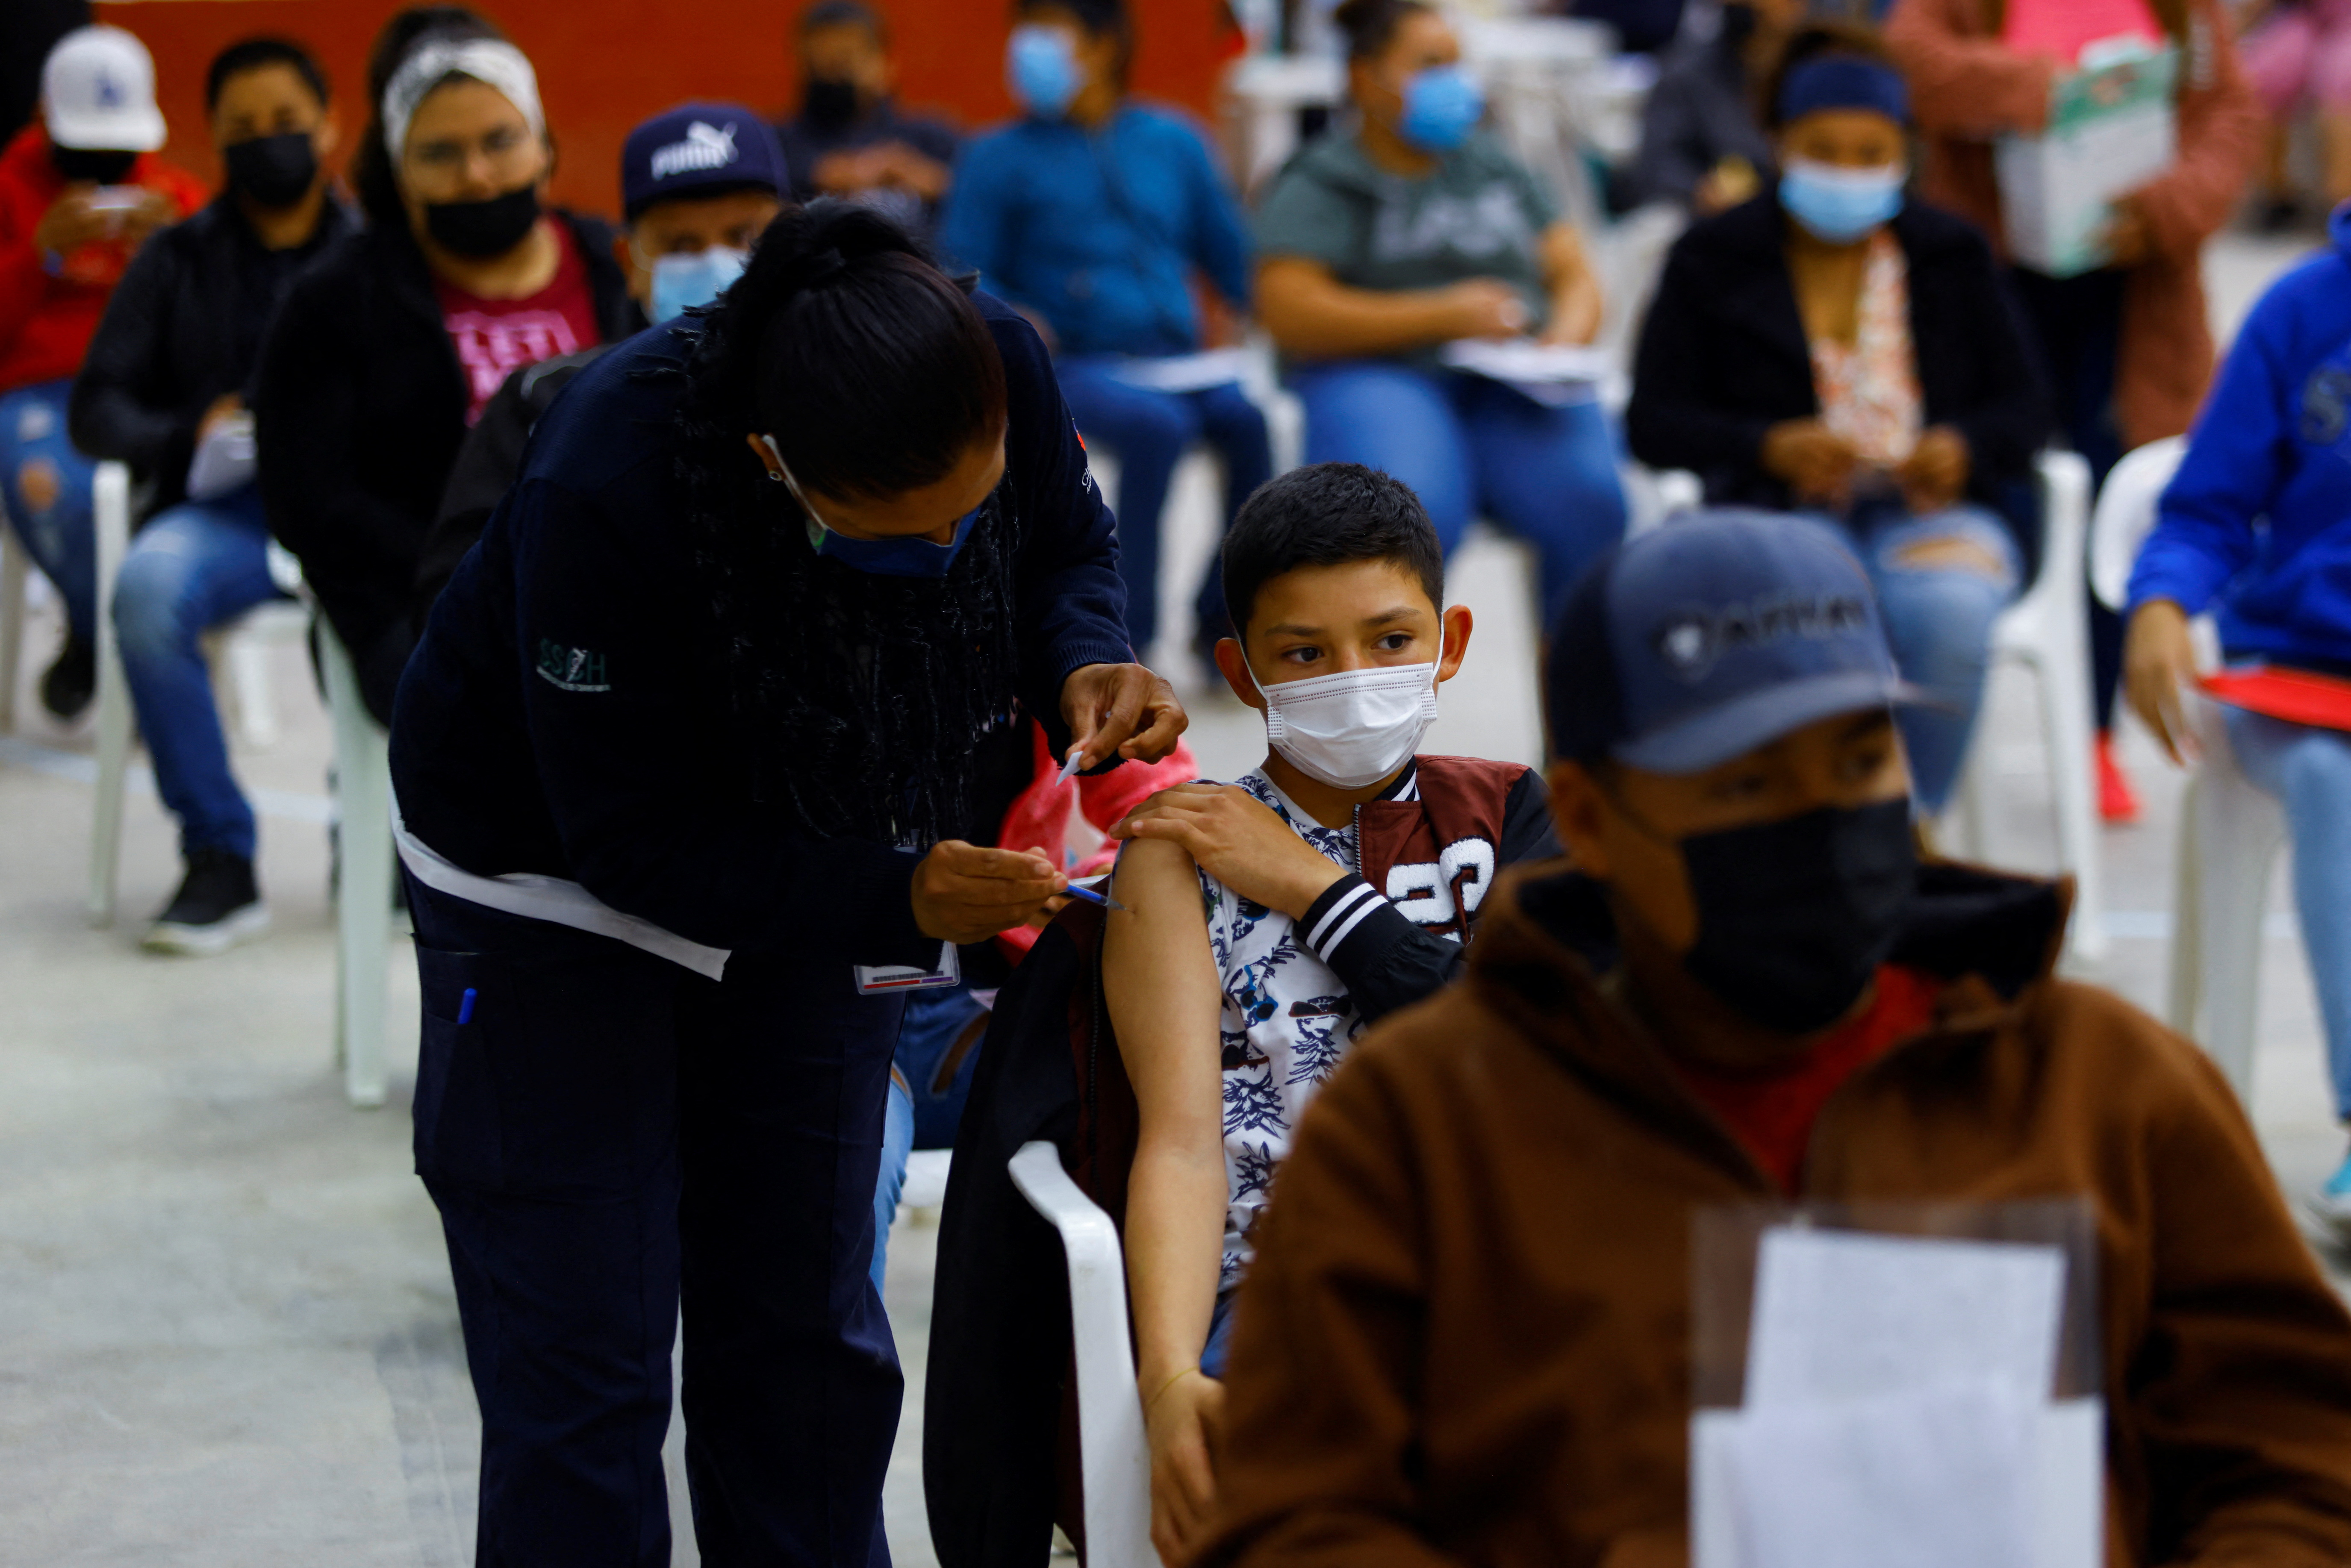 멕시코에서 Covid-19 백신을 맞을 수 있는 어린이 수는 몇 명입니까?